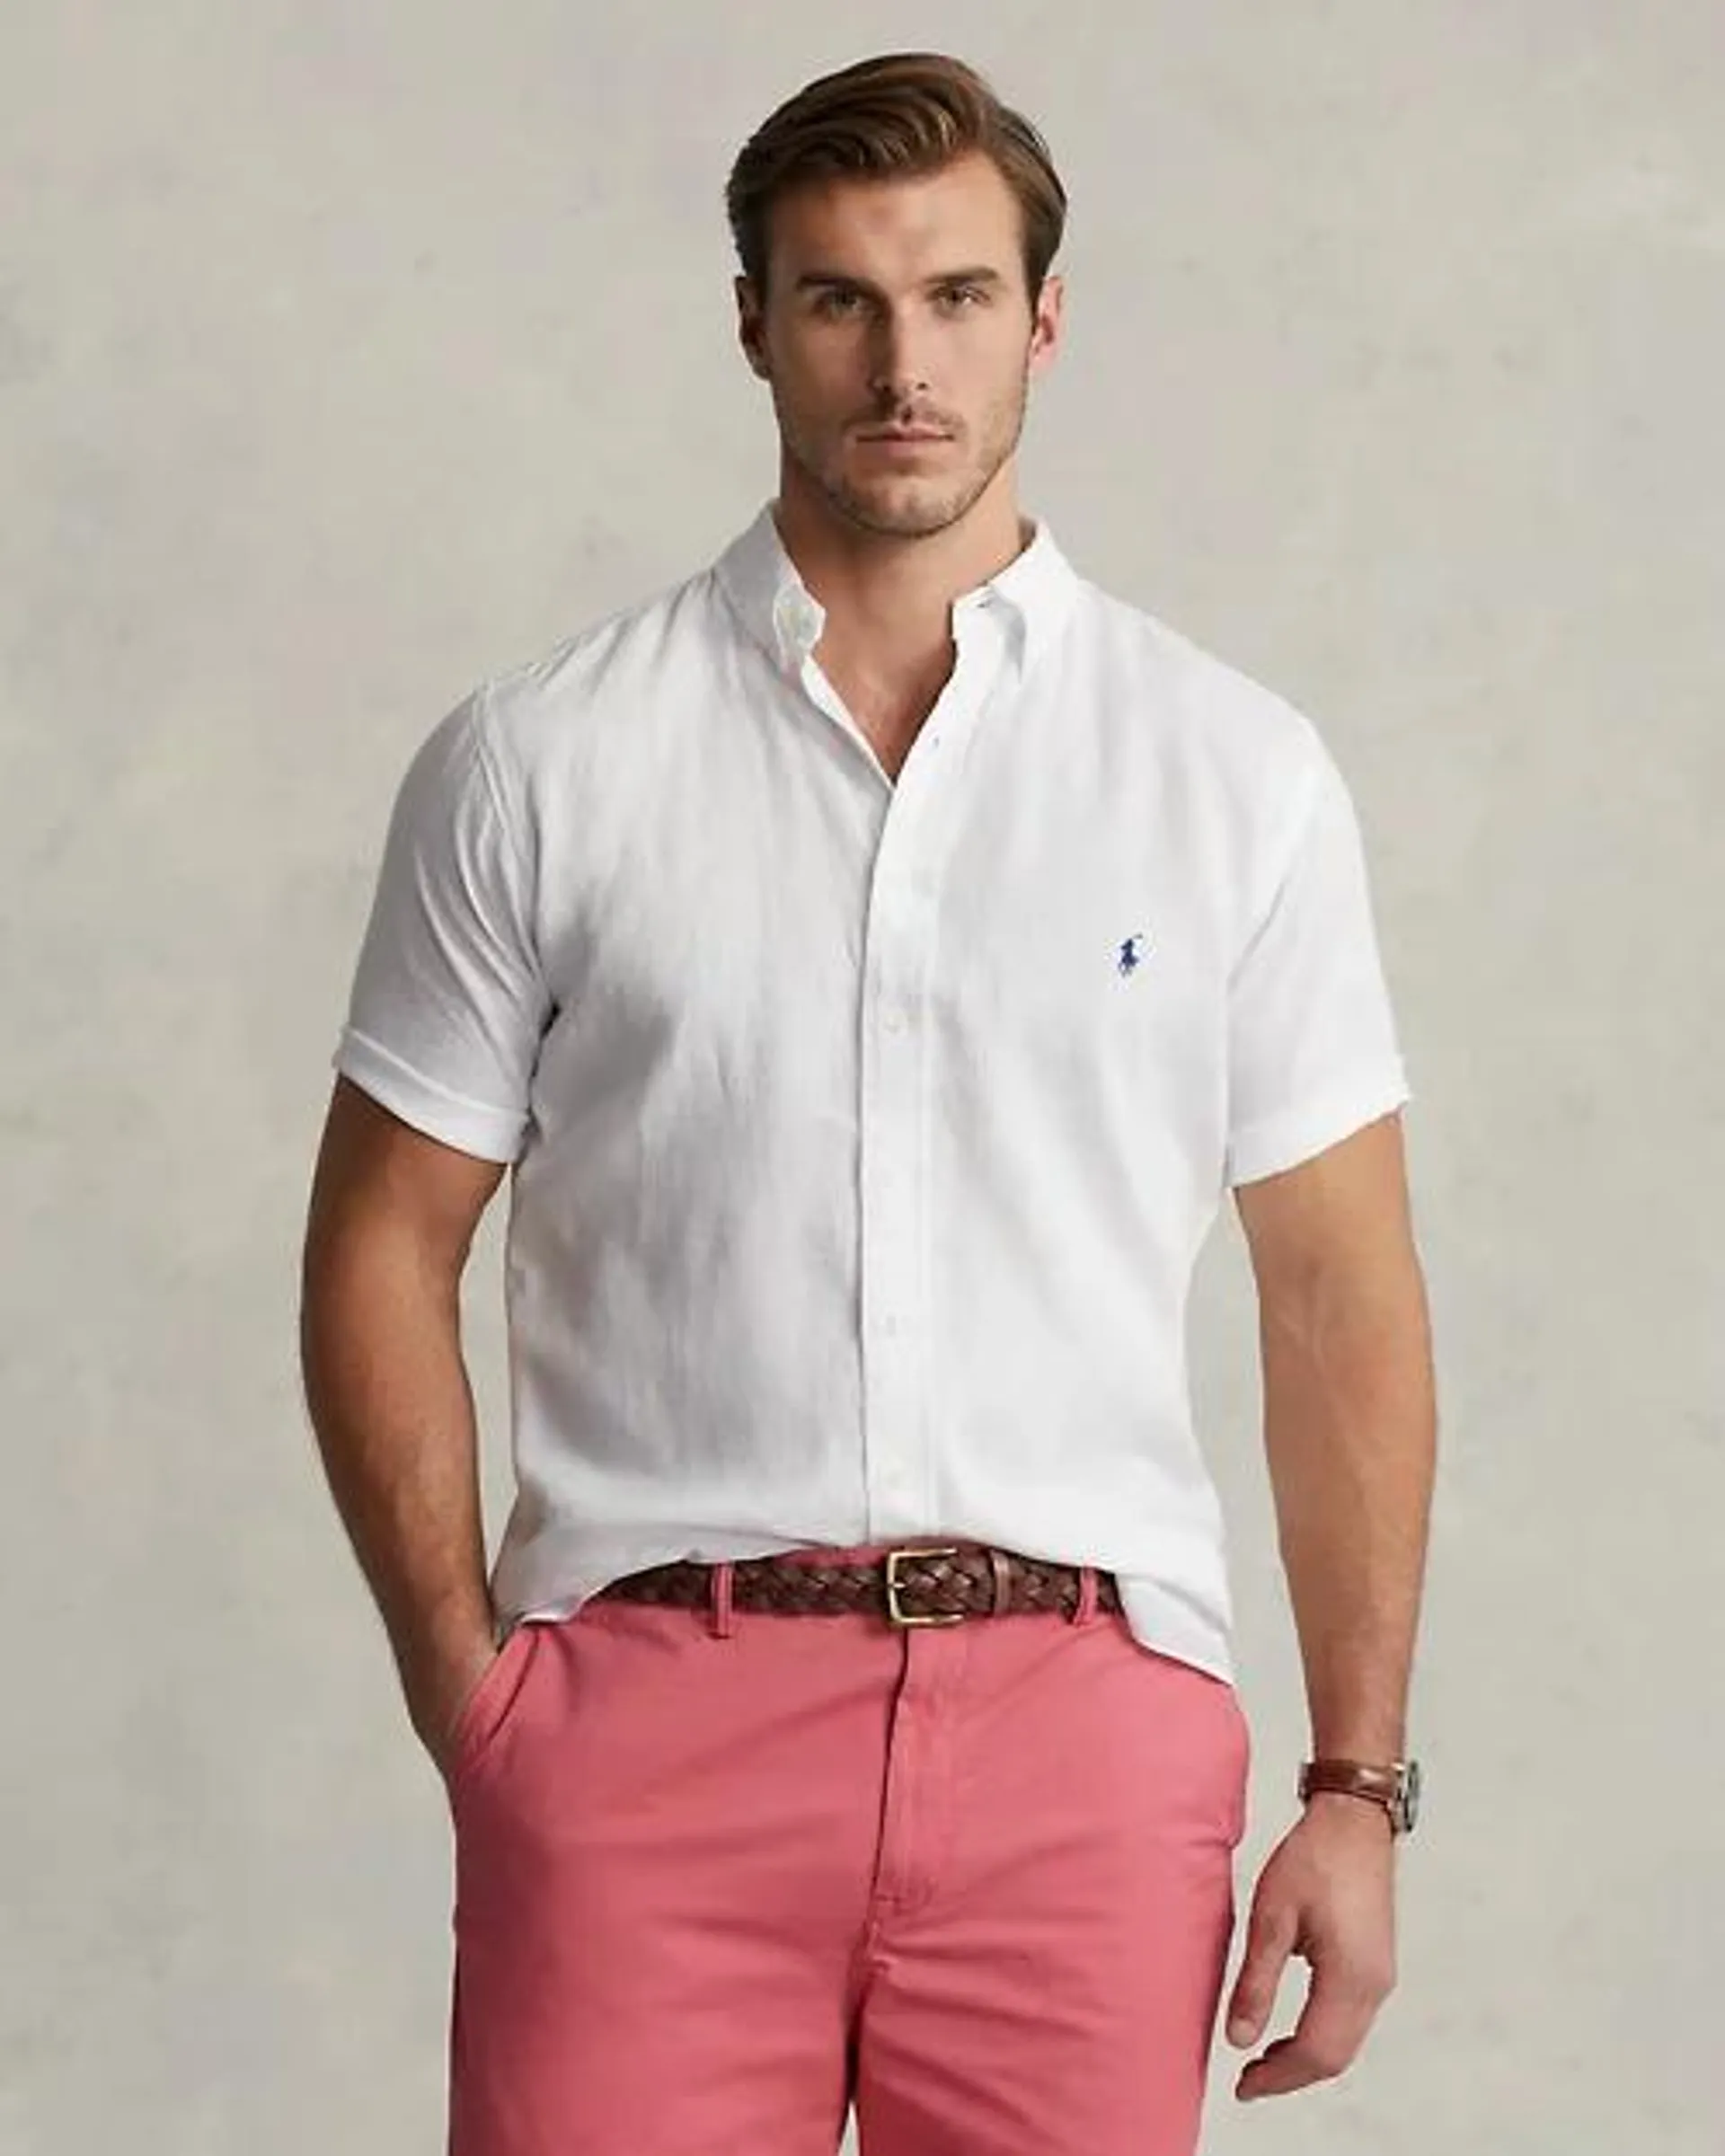 Lightweight Linen Shirt